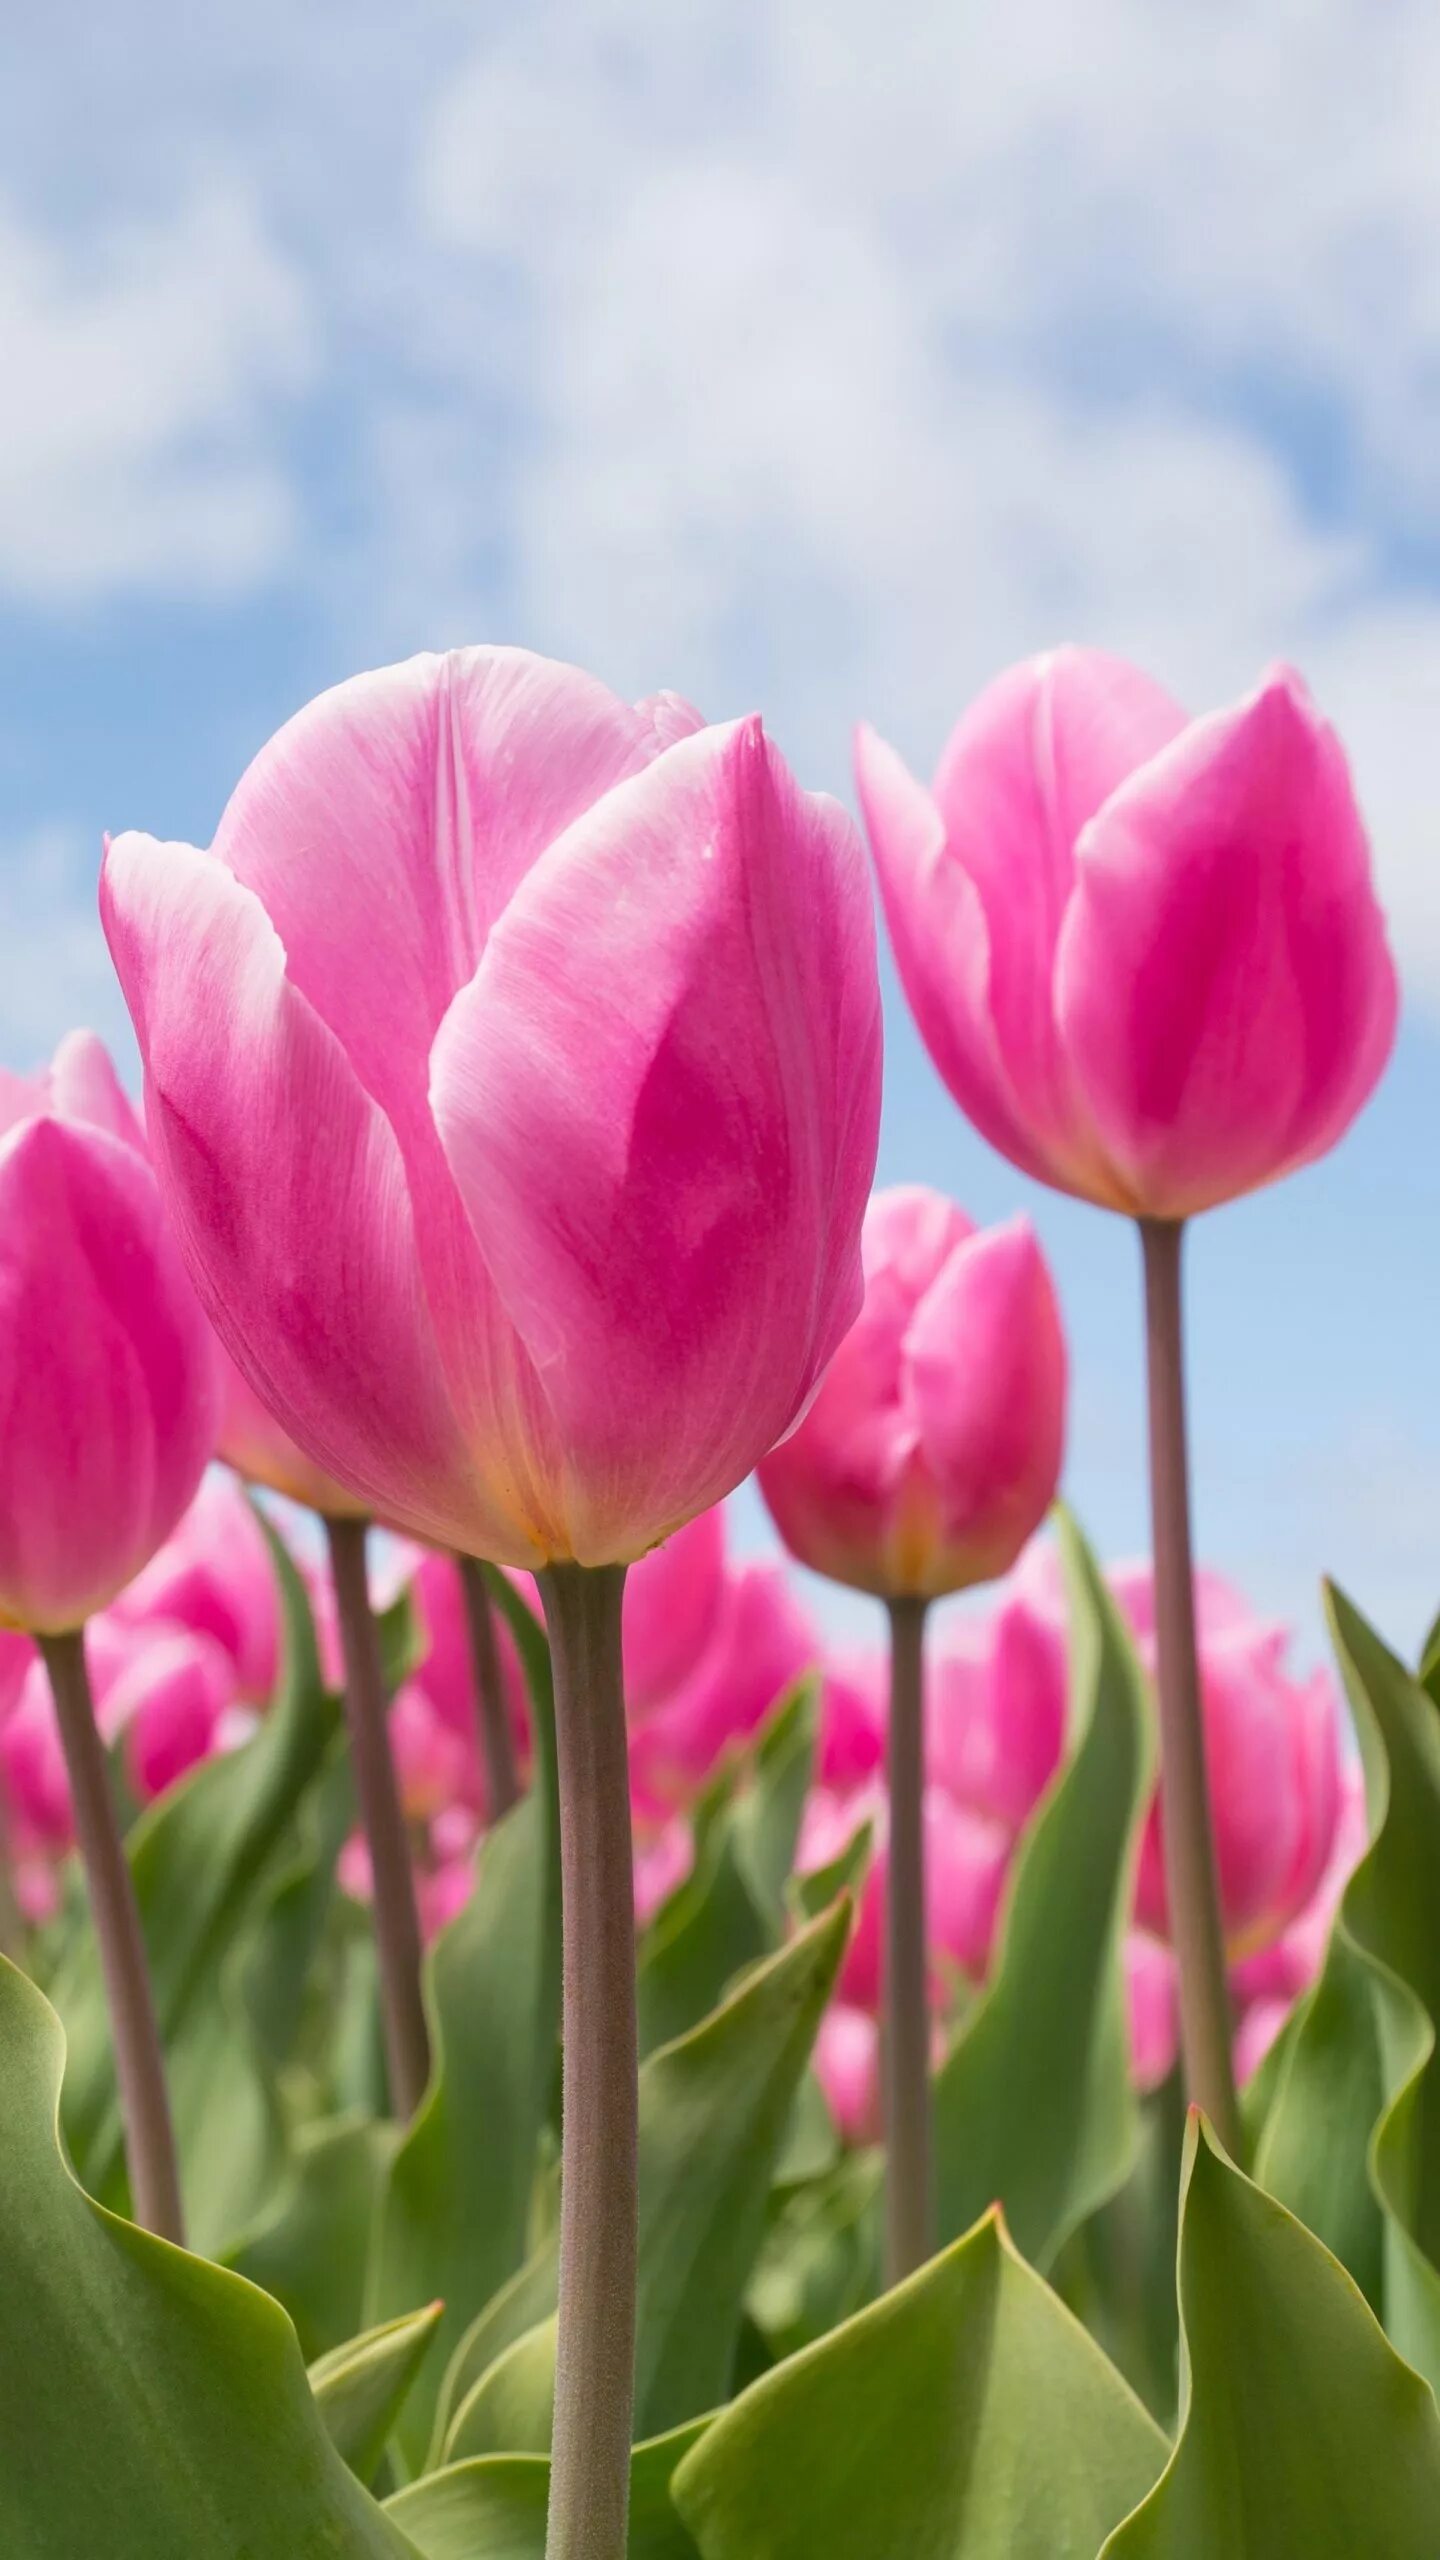 Тюльпаны заставка на телефон вертикальные. Голландия тюльпаны. Розовые тюльпаны. Яркие тюльпаны. Тюльпаны вертикально.